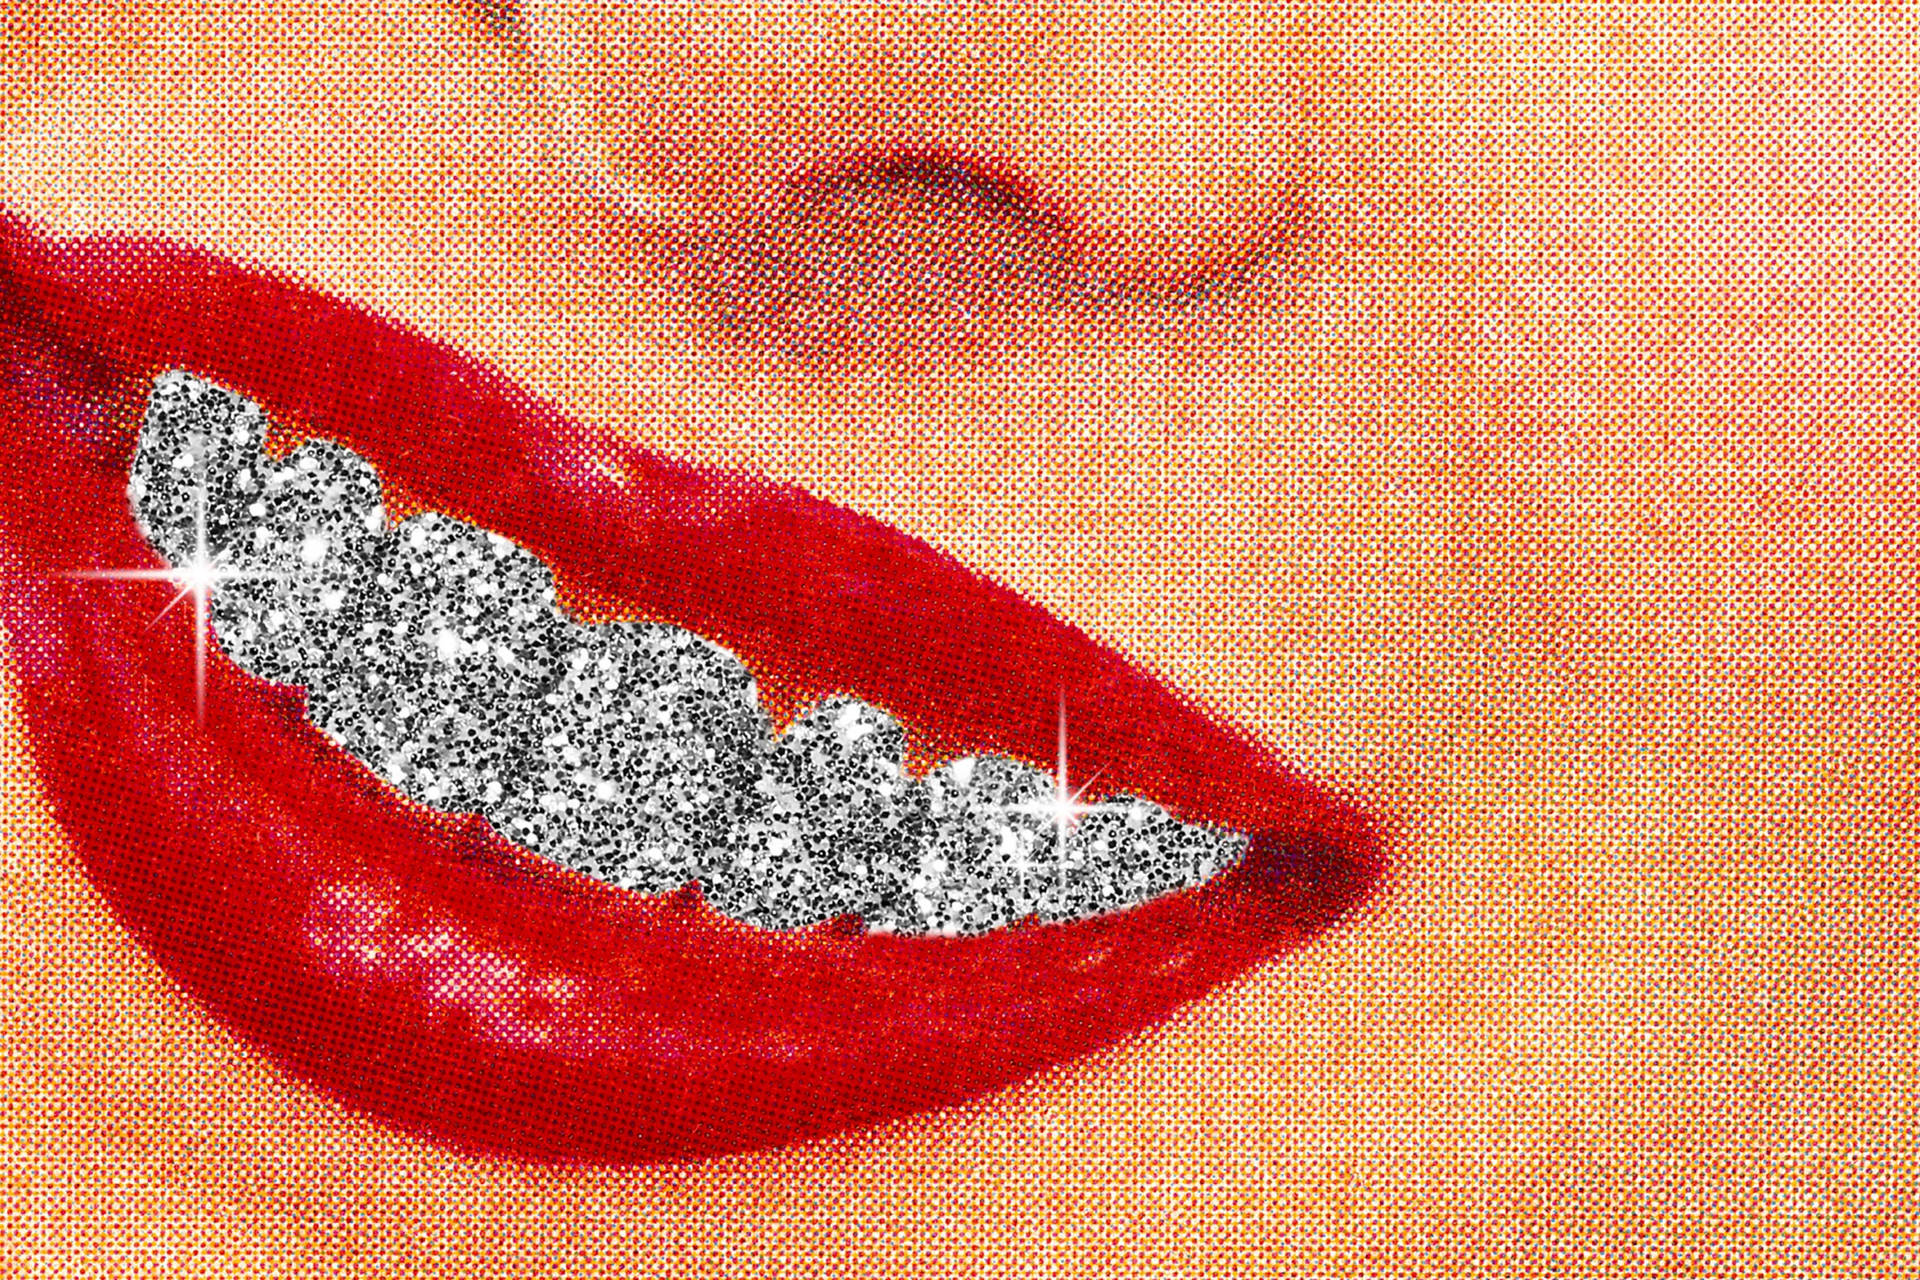 Glitter Teeth Smile Wallpaper